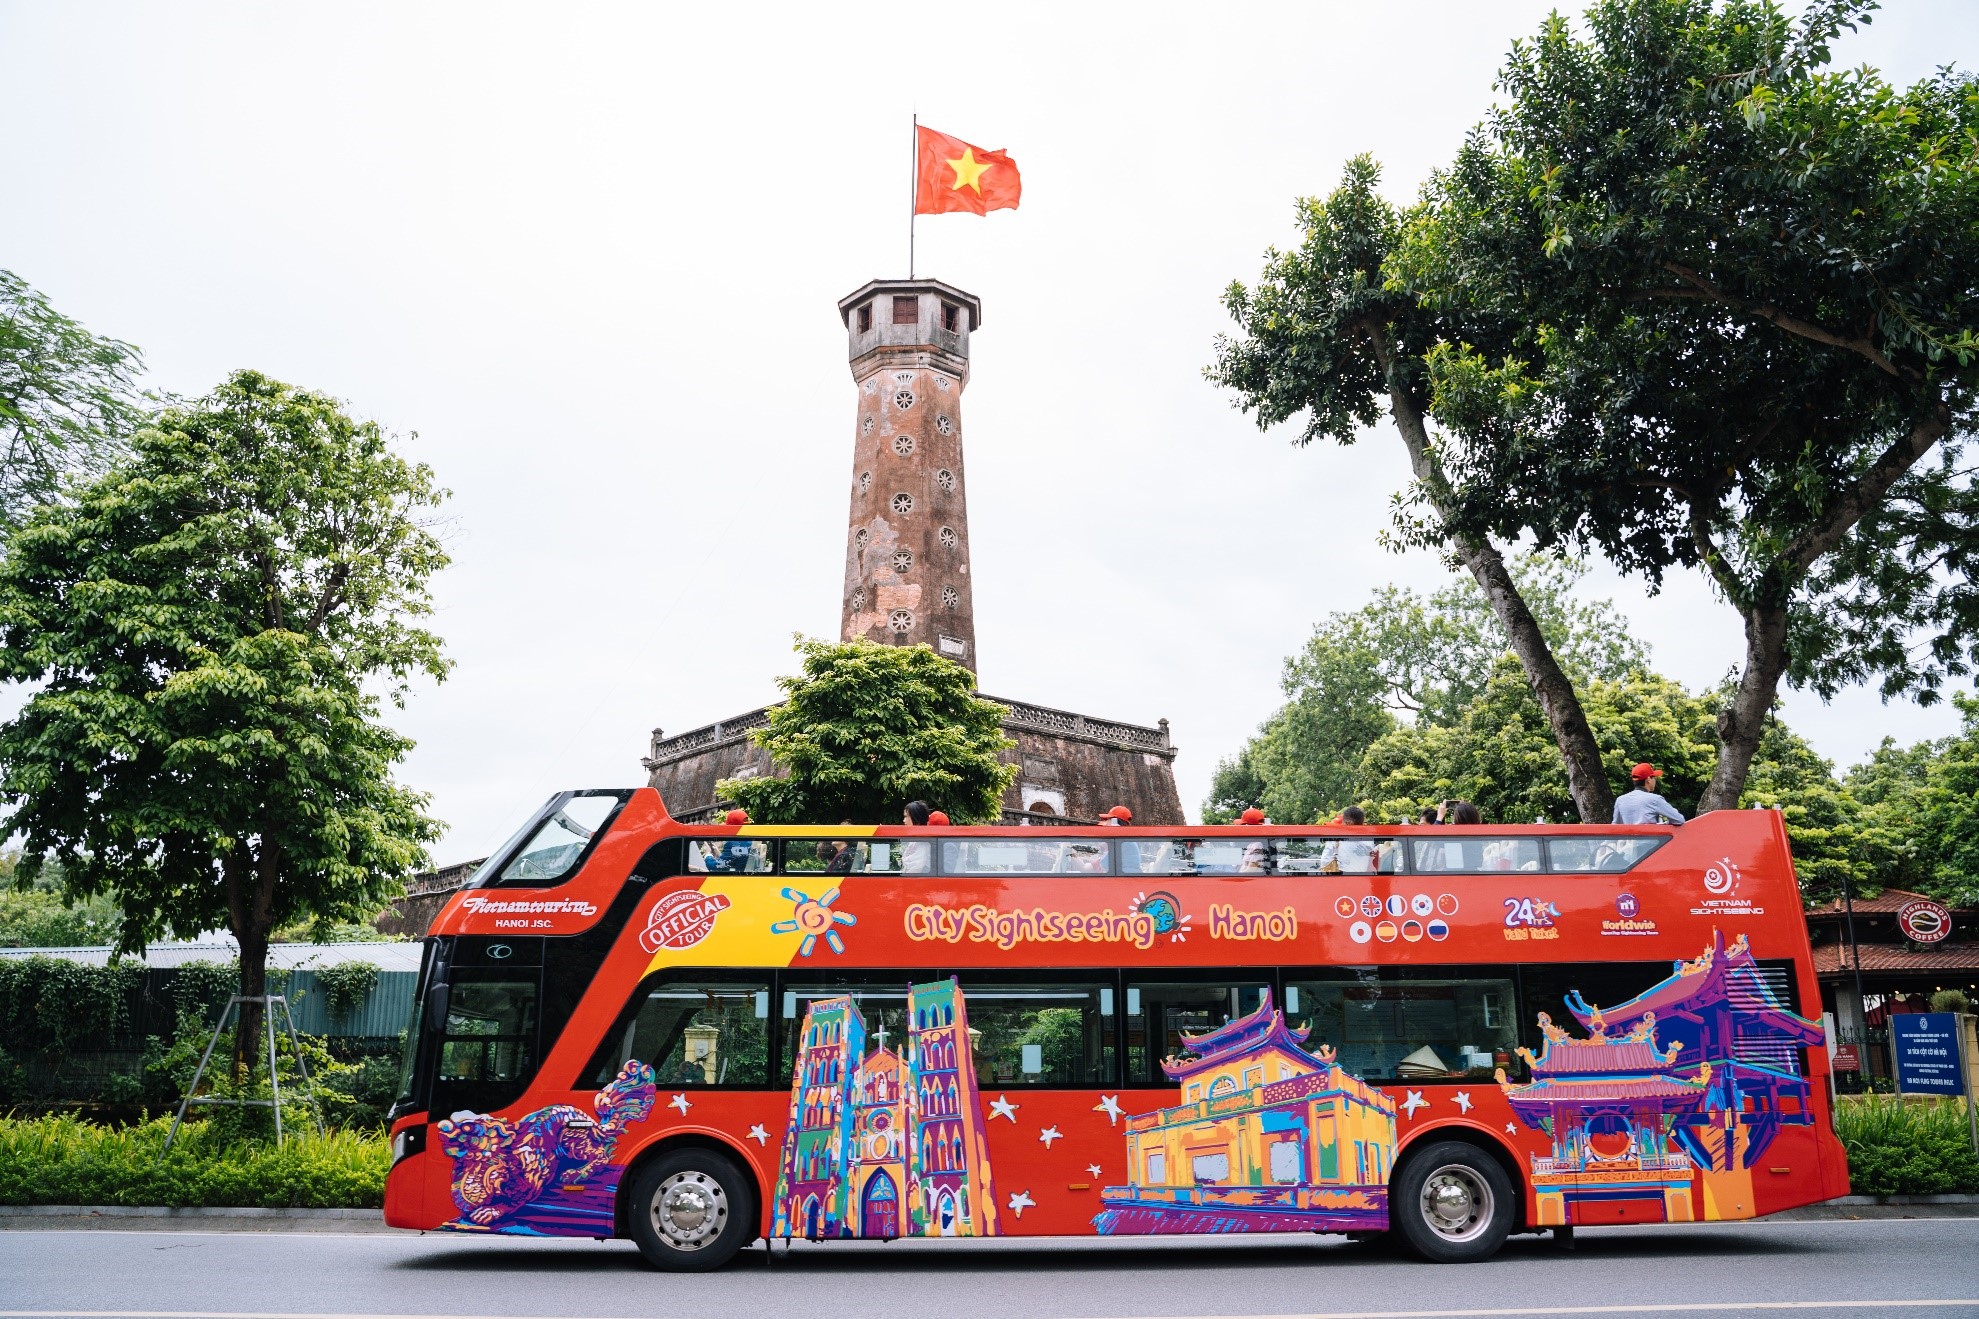 City Sightseeing miễn phí 3.000 vé xe buýt 2 tầng cho du khách dịp Quốc khánh 2-9 - Ảnh 1.